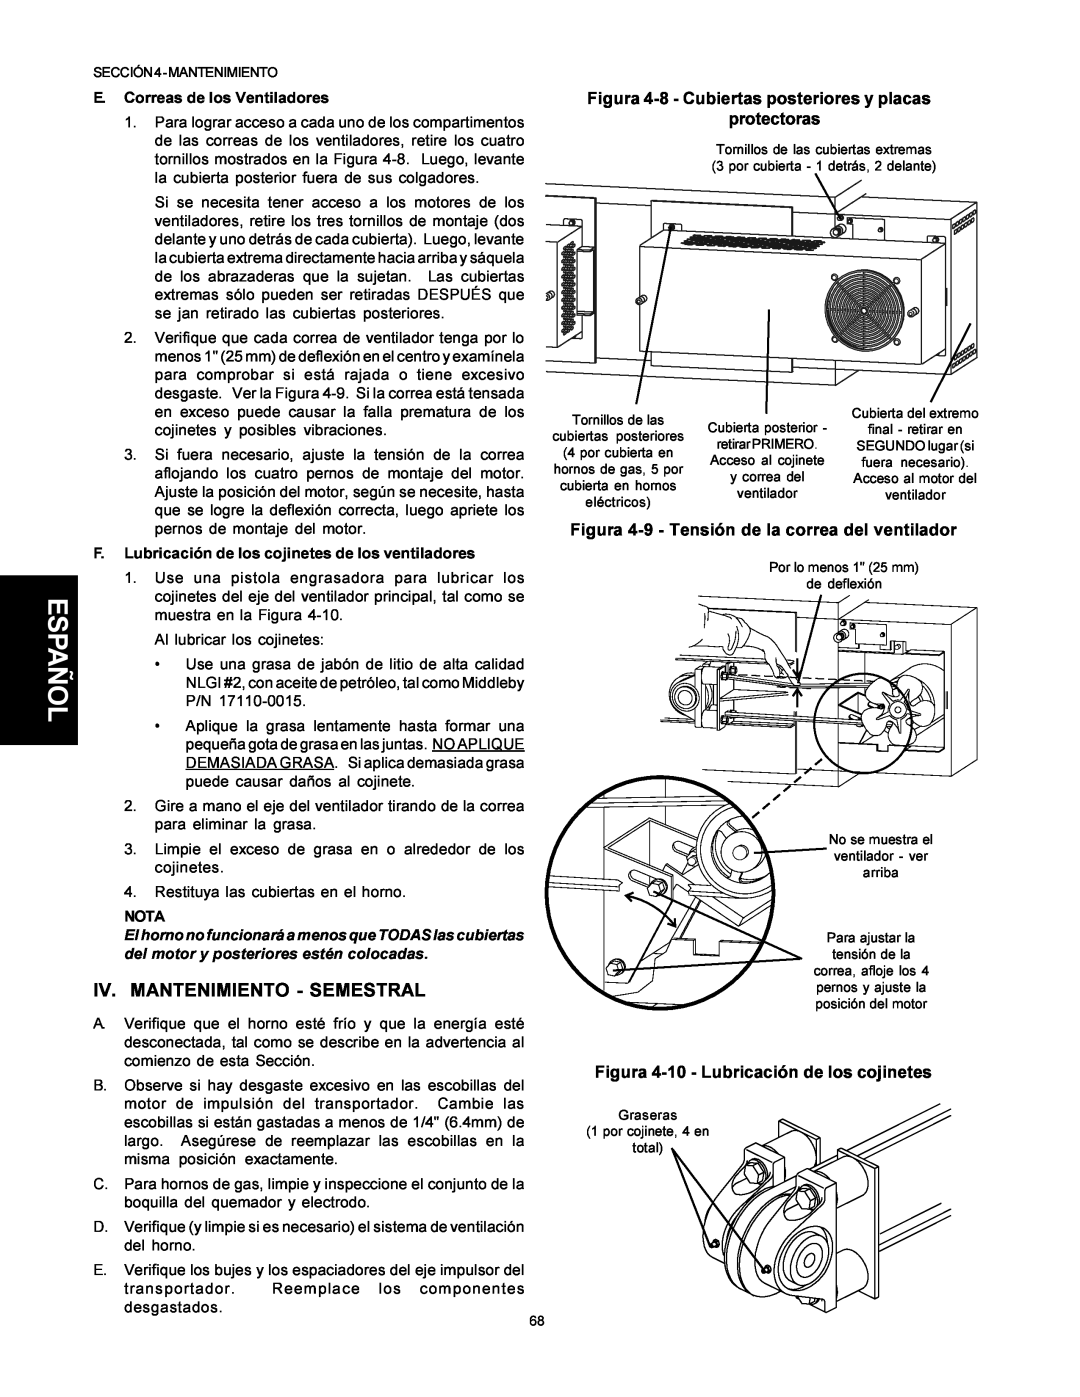 Middleby Marshall PS500 installation manual Iv. Mantenimiento - Semestral, Español, E. Correas de los Ventiladores, Nota 